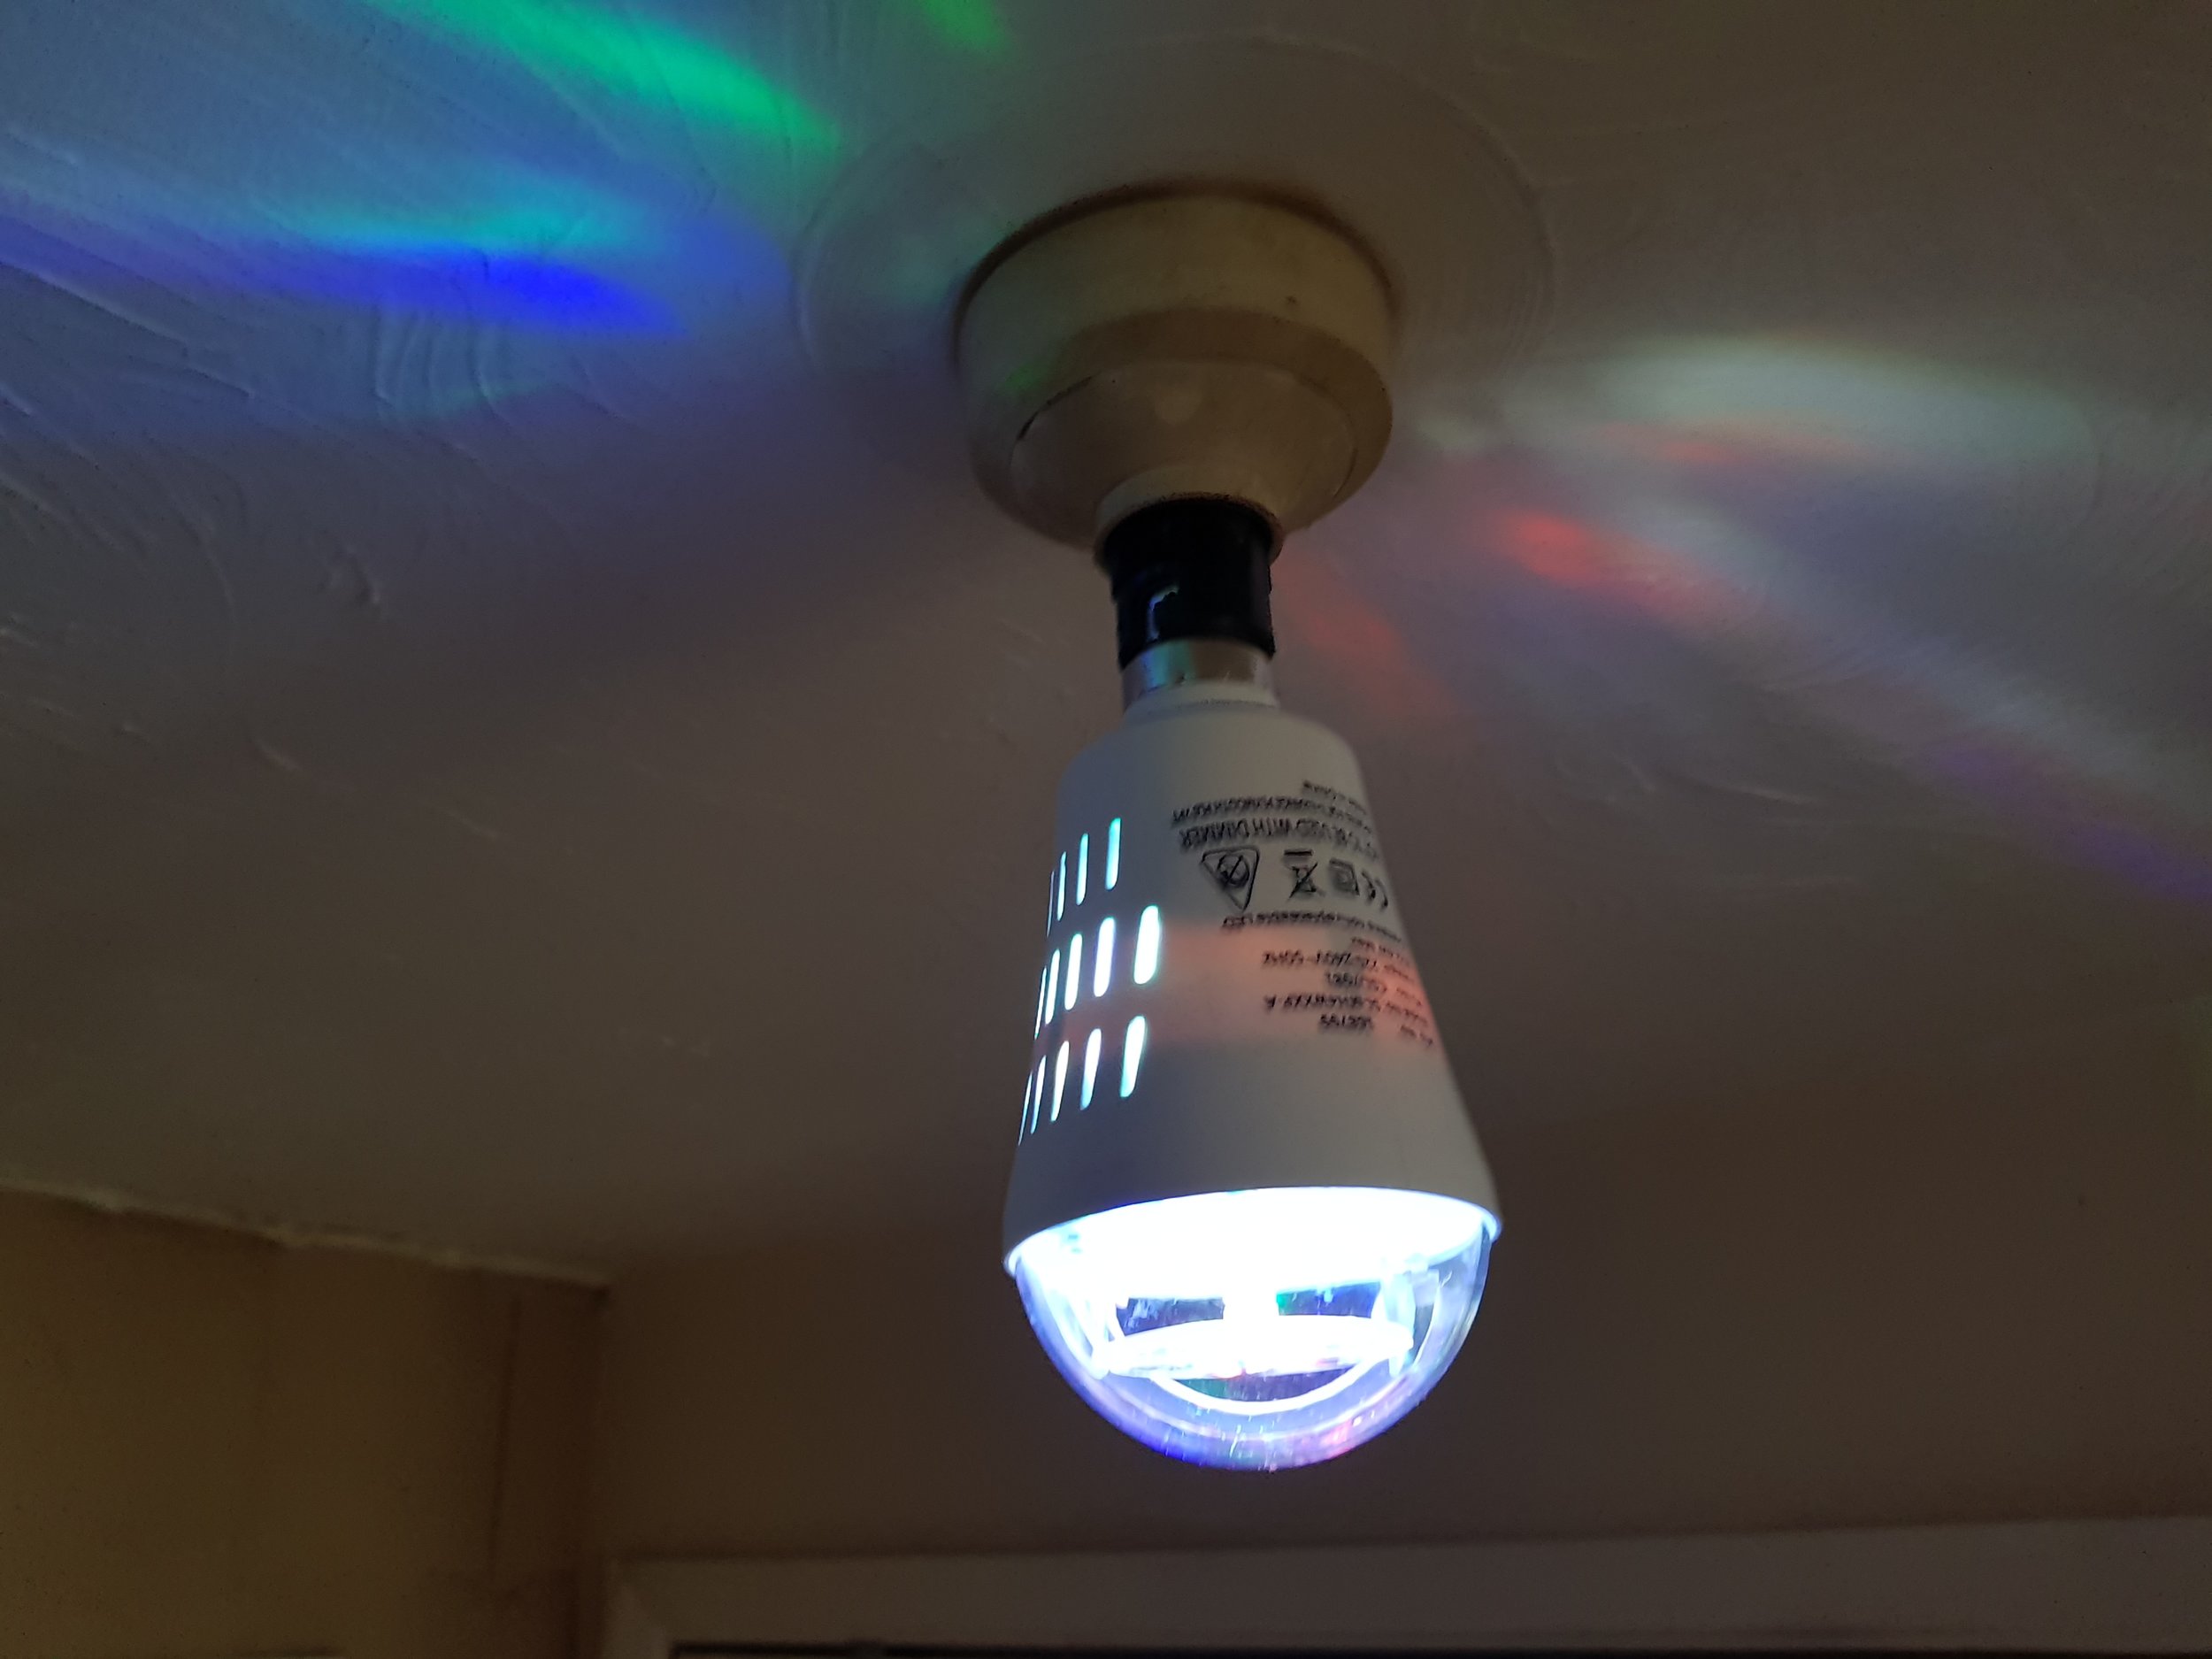 Christmas projector light bulb